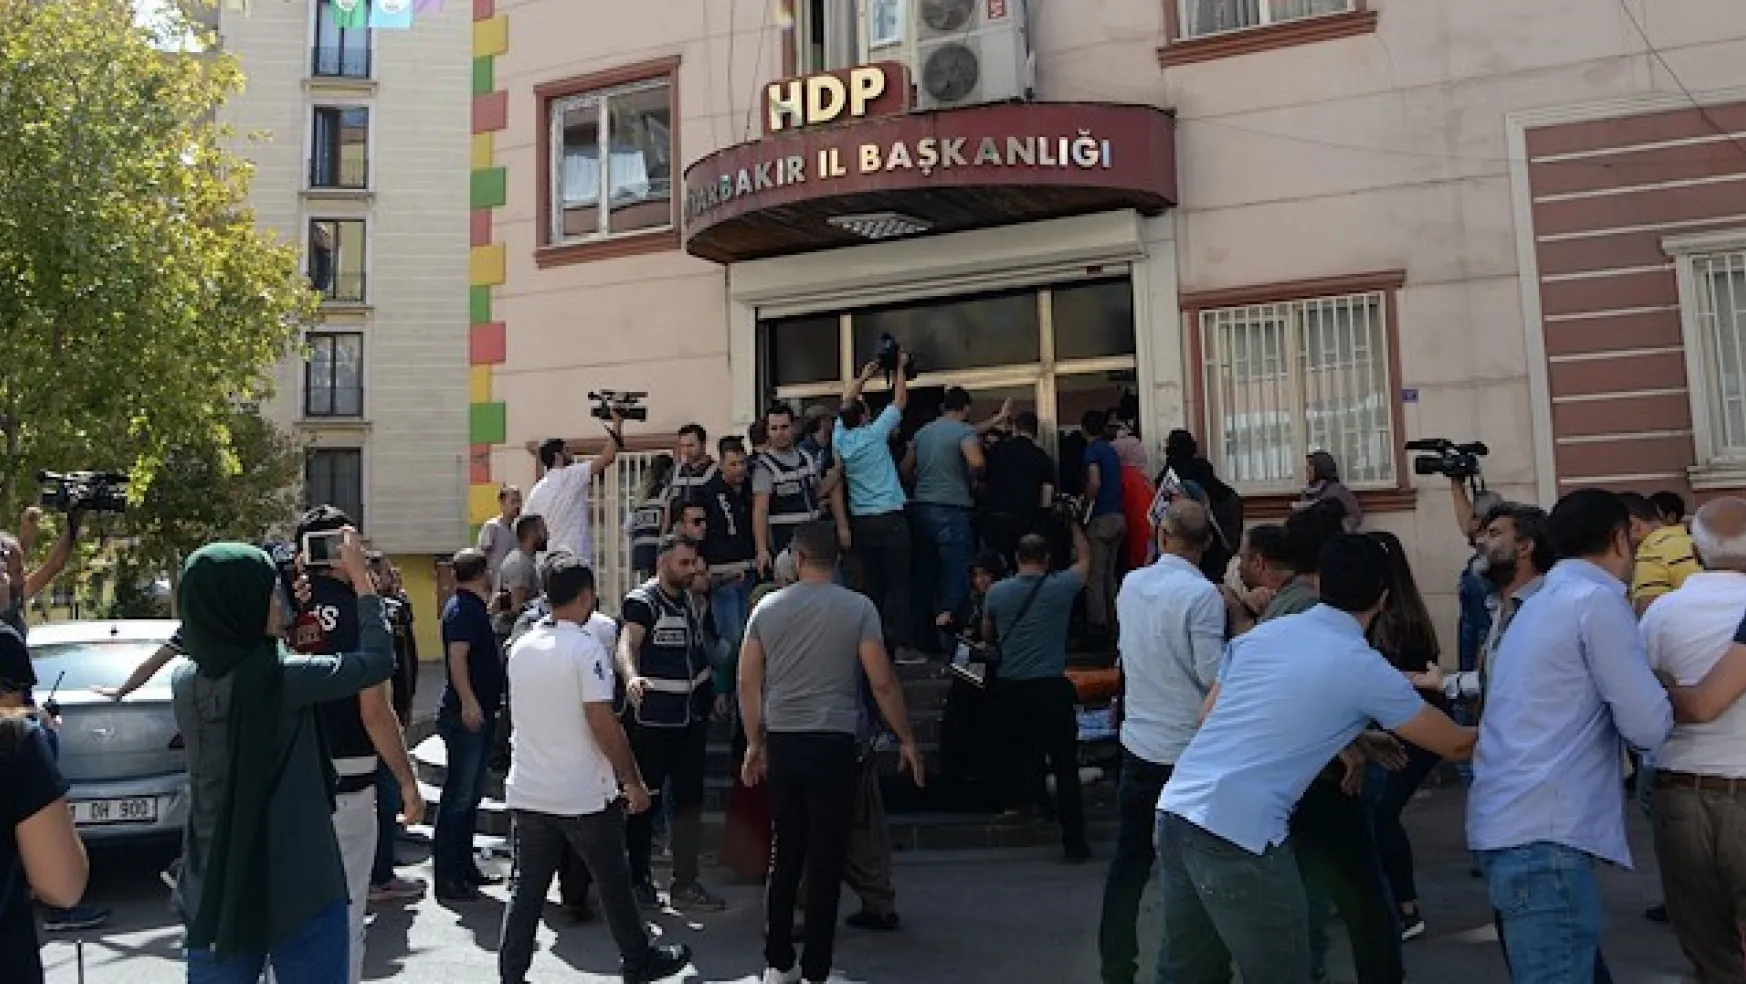 HDP PKK'nın Kayıt Bürosu Mu?